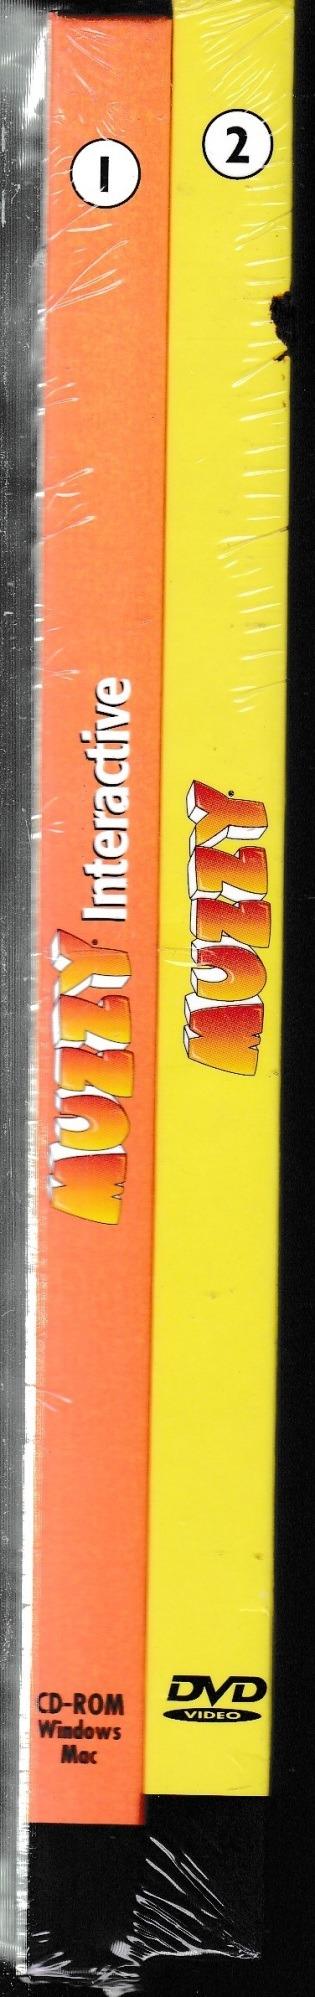 BBC Muzzy, due volumi: level I, part 1 con CD-Rom - level I, part 2 con dvd - . Multilingual language course - copertina